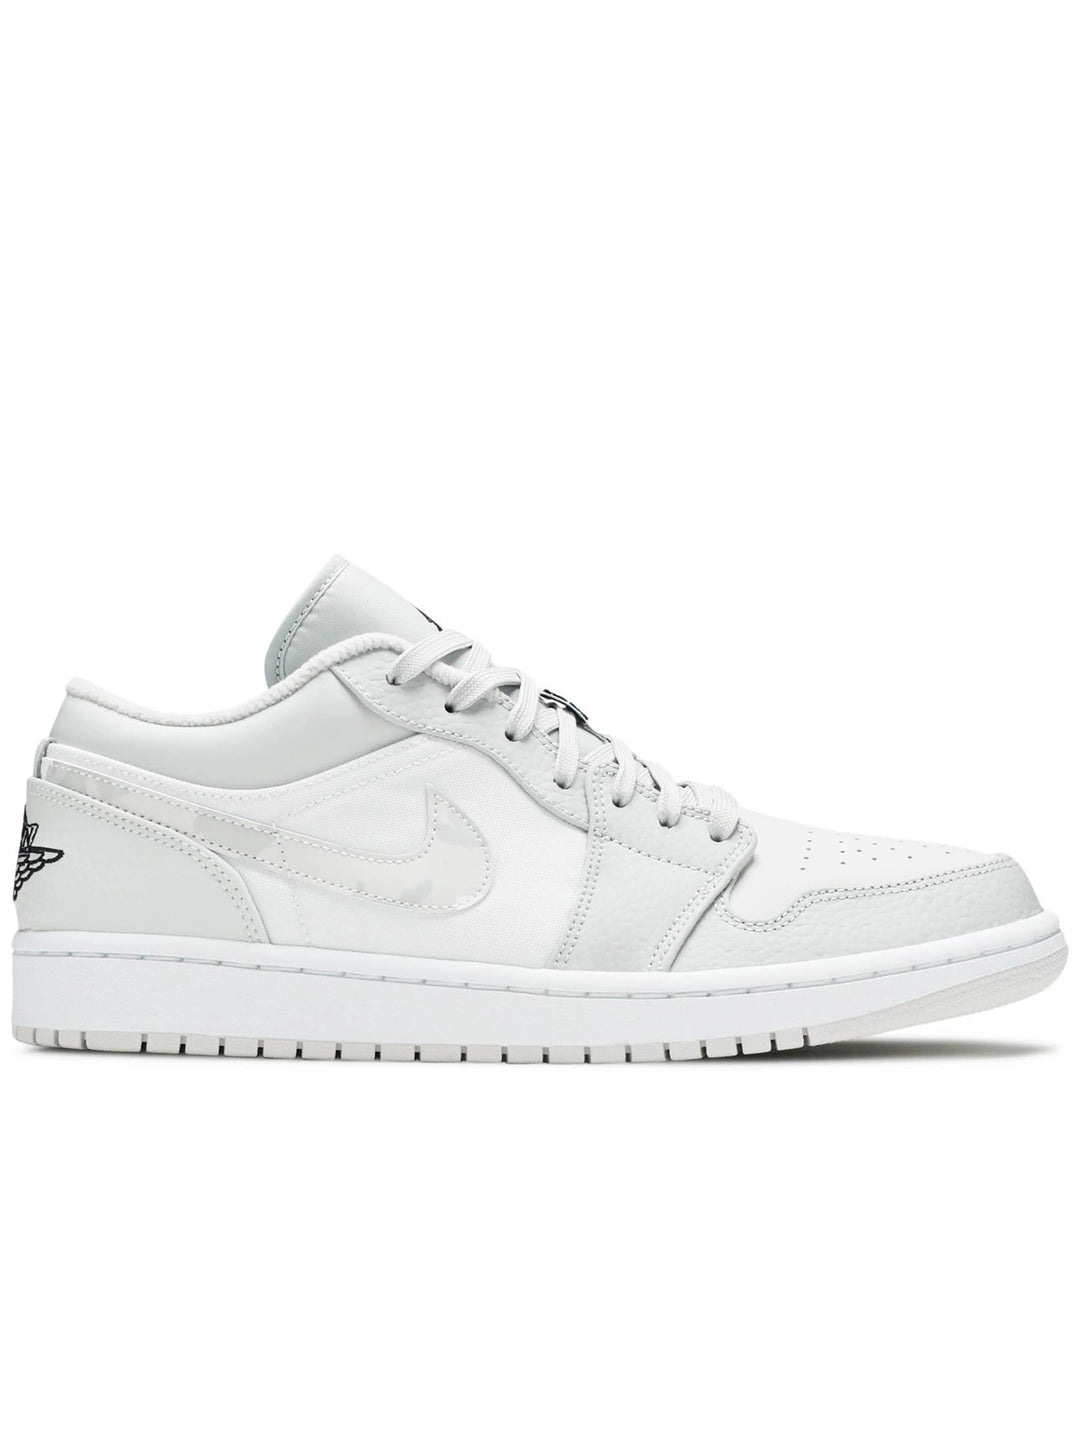 Nike Air Jordan 1 Low White Camo Jordan Brand